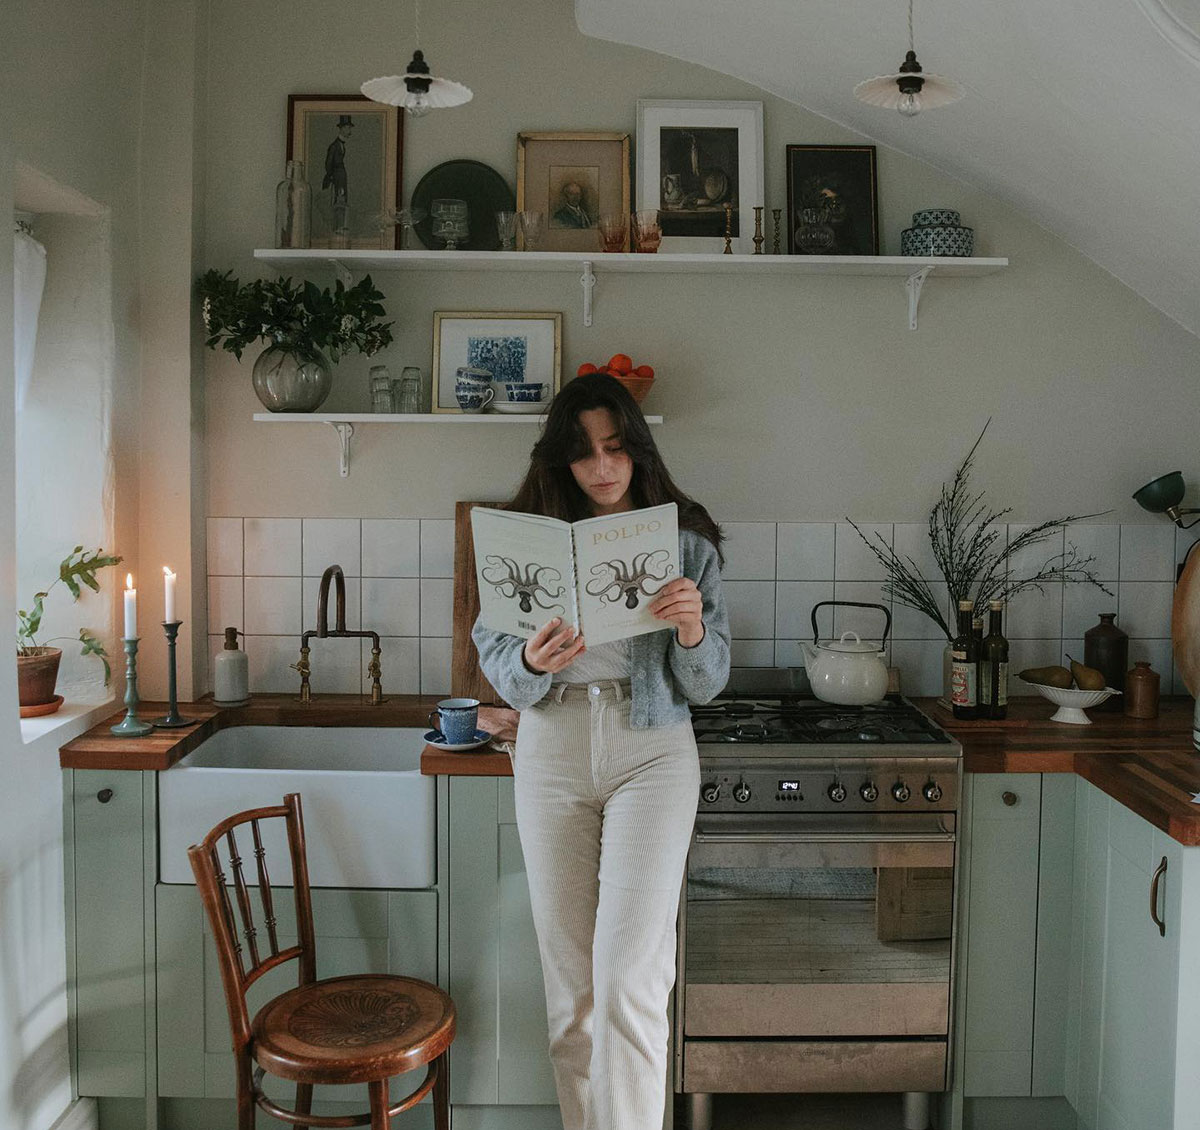 Уютный интерьер из Instagram: дом шведского декоратора в Шотландии